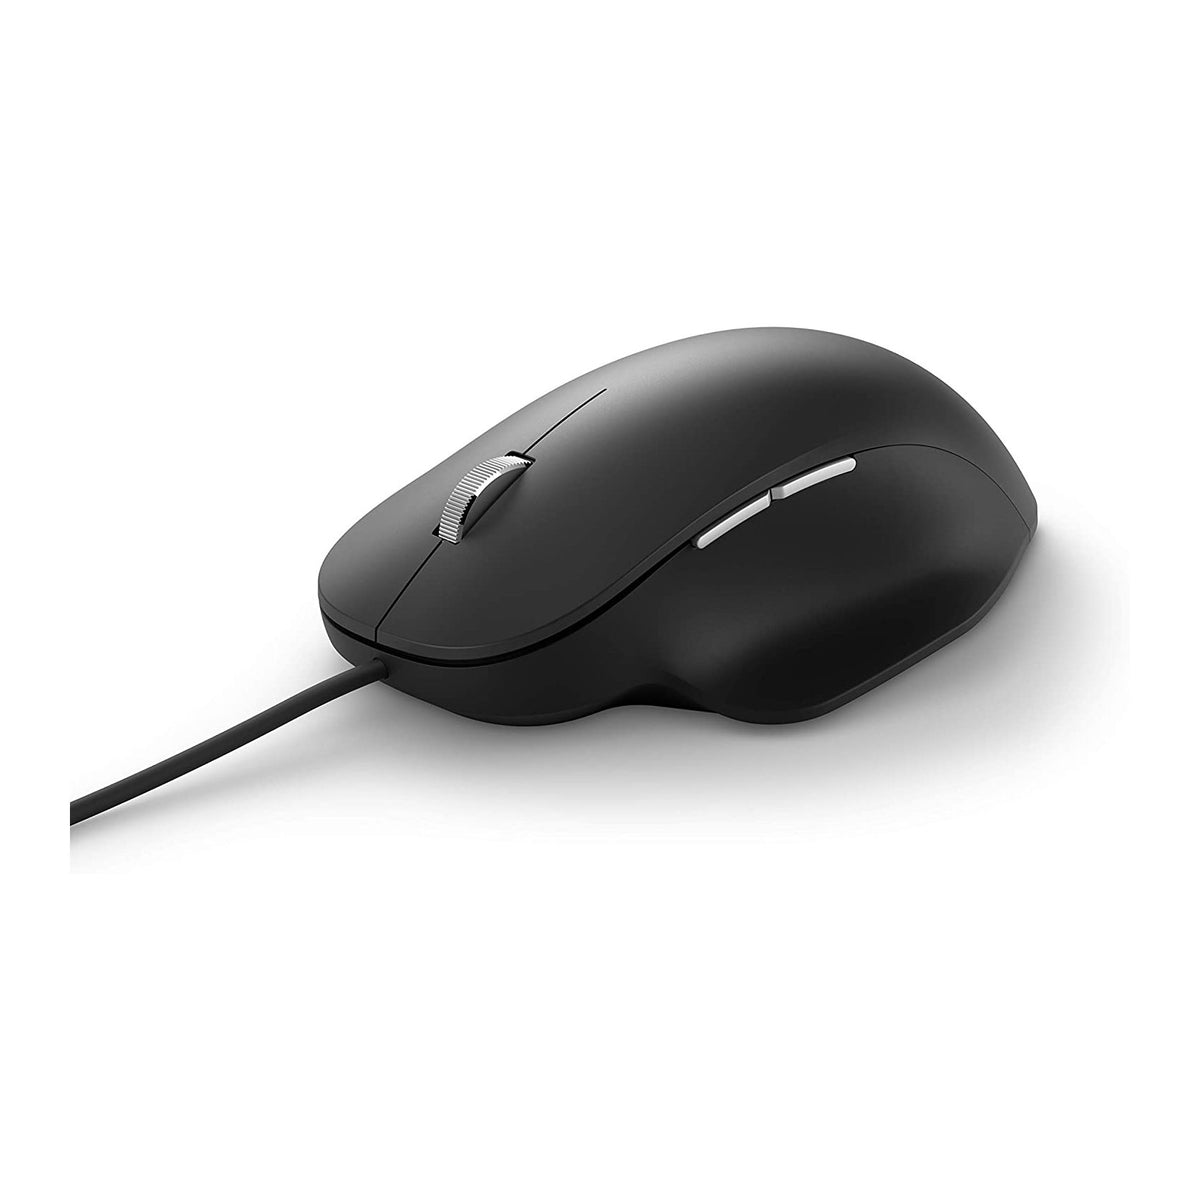 Teclado y Mouse Microsoft, cable USB, soporte excelente, comandos dedicados, español - Multimax